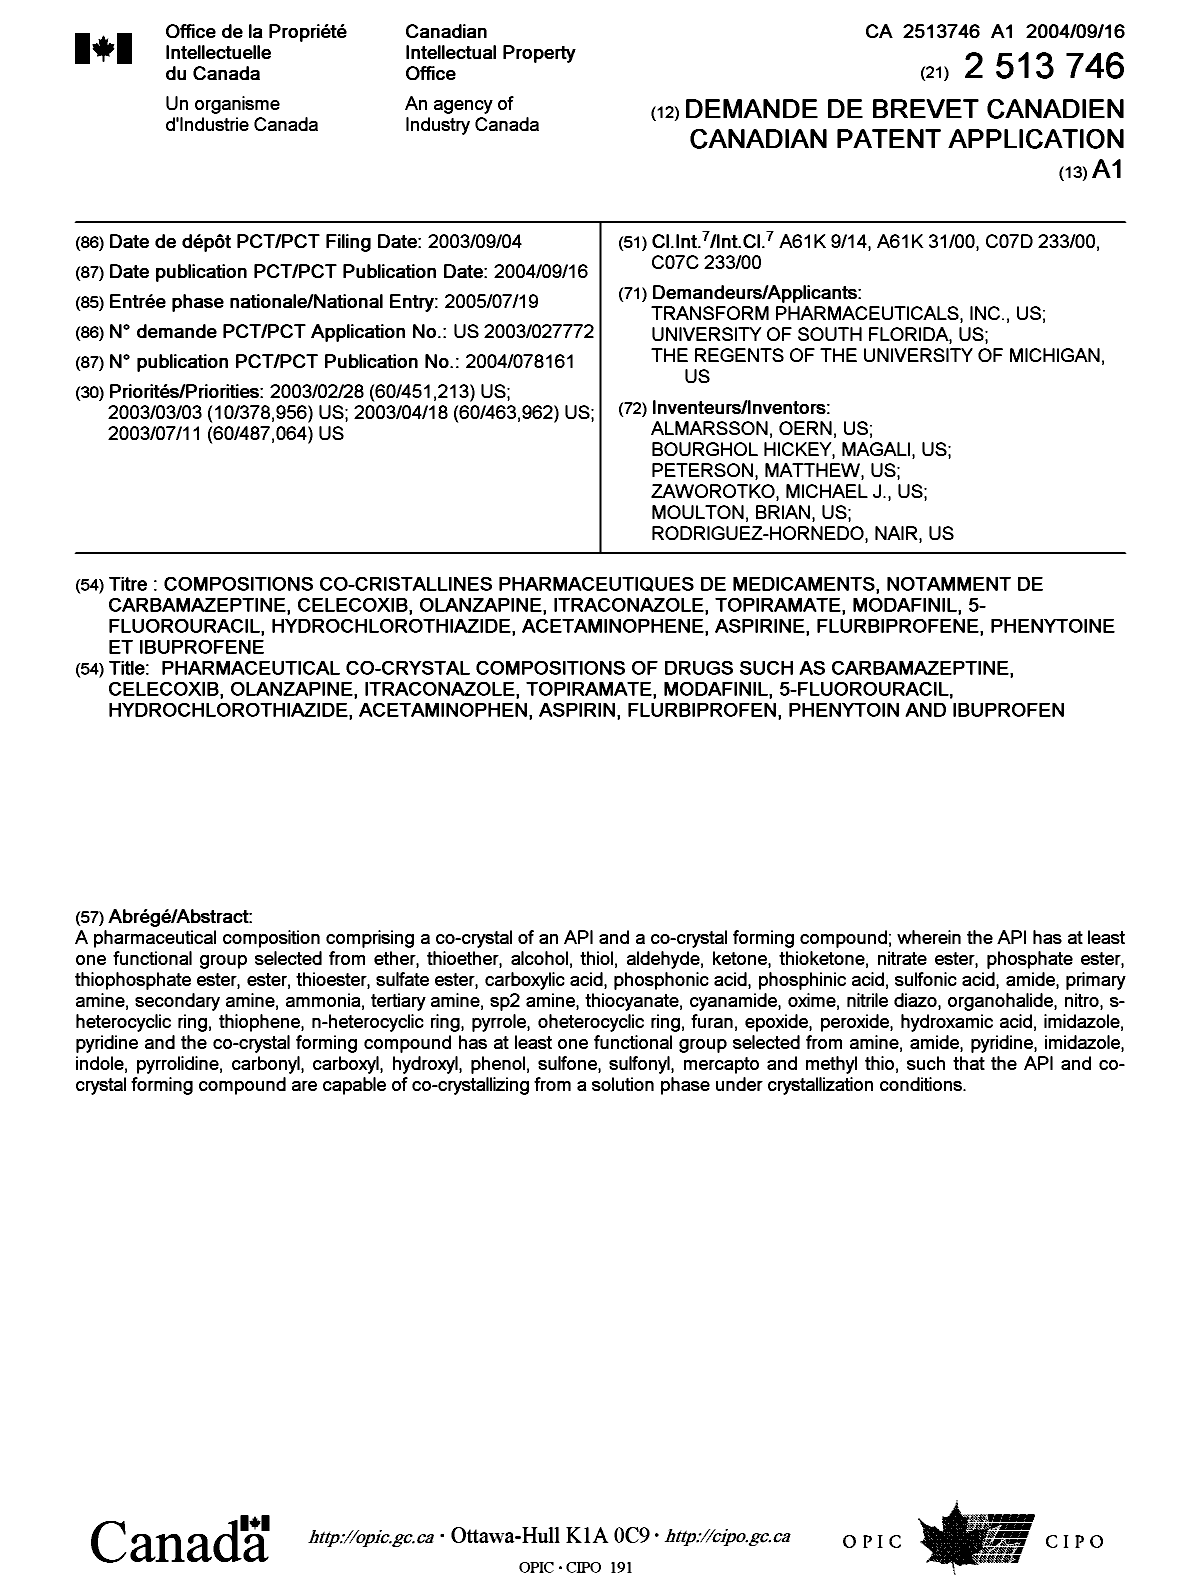 Document de brevet canadien 2513746. Page couverture 20041204. Image 1 de 2